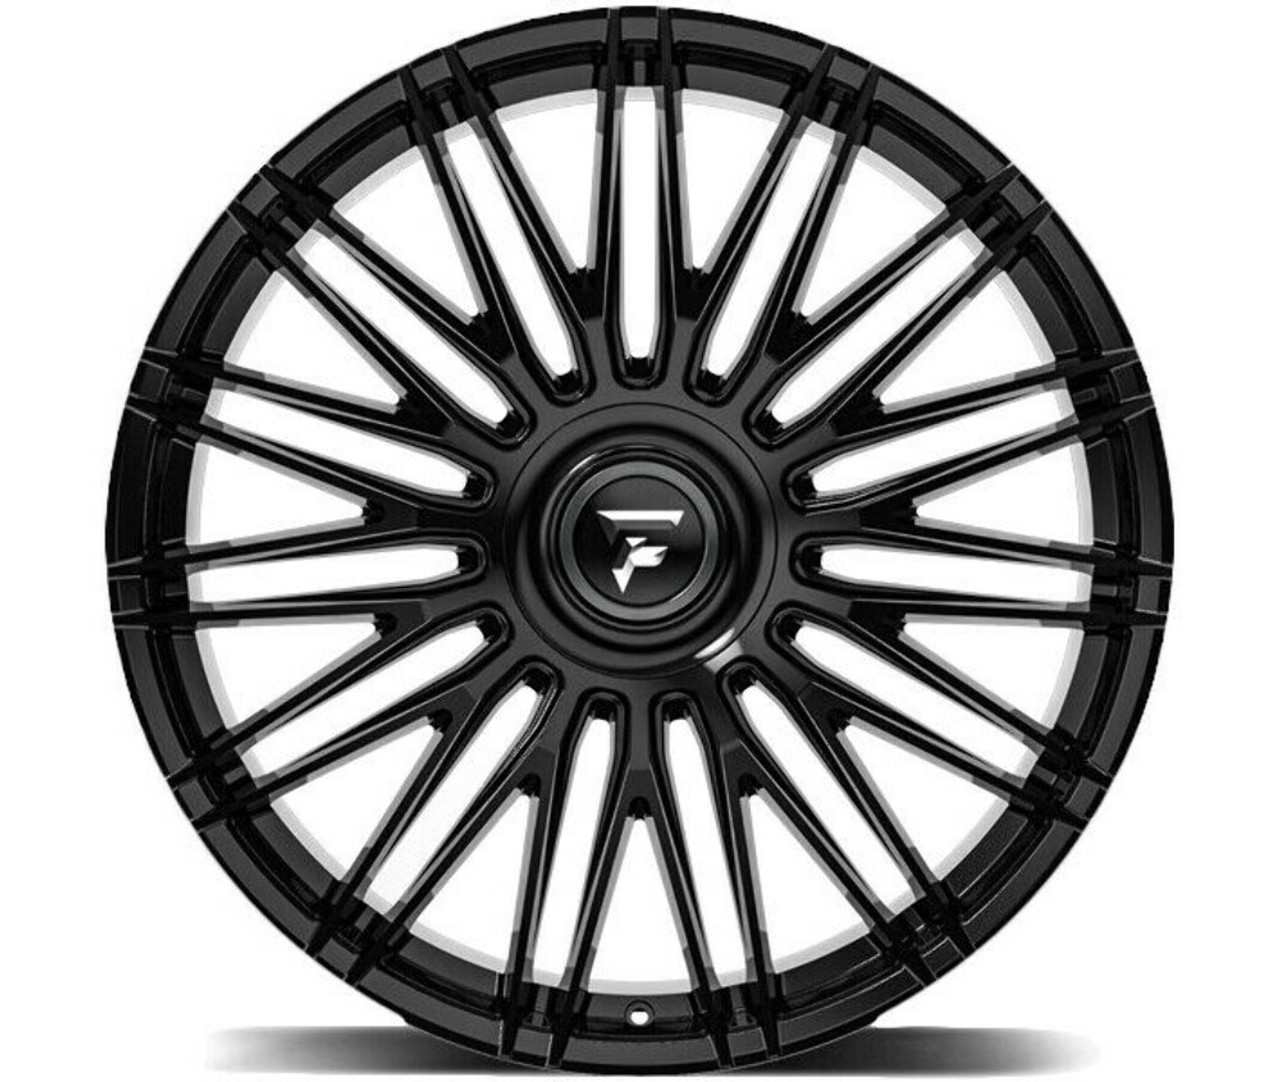 22" Fittipaldi Street FS369B Gloss Black 22x9.5 Wheel 5x115 5x120 15mm Rim